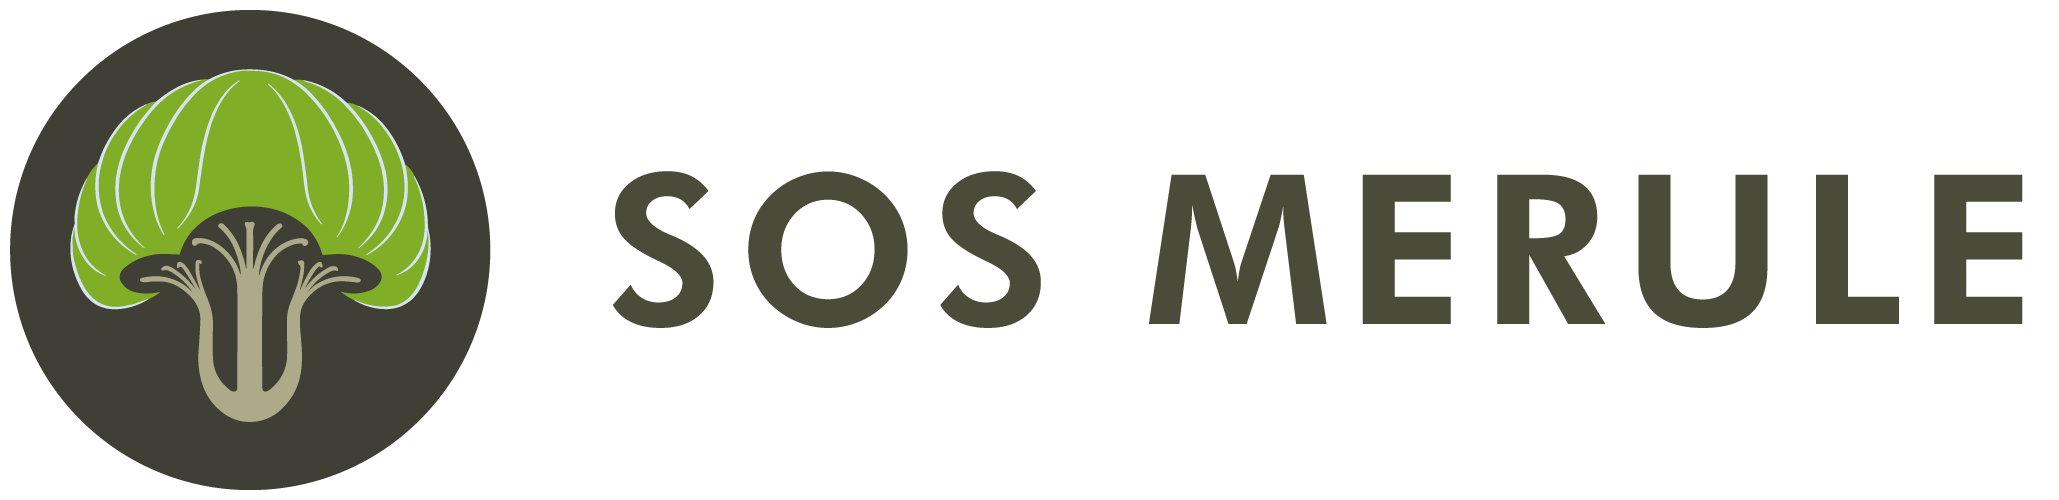 SOS Mérule